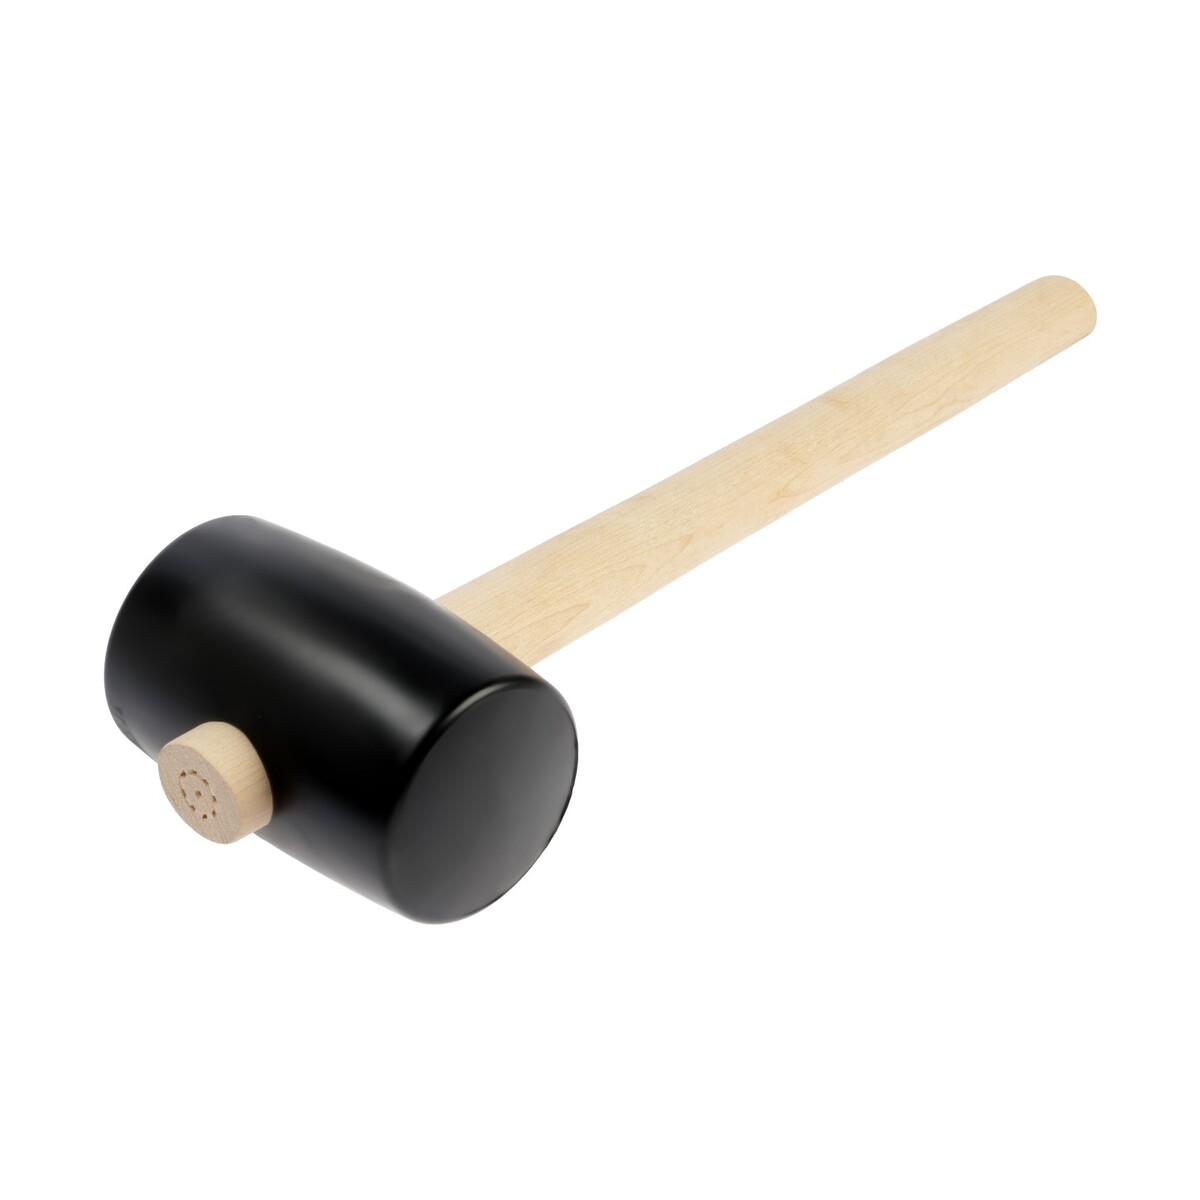 Киянка лом, деревянная рукоятка, черная резина, 75 мм, 700 г киянка тундра деревянная рукоятка черная резина 450 г